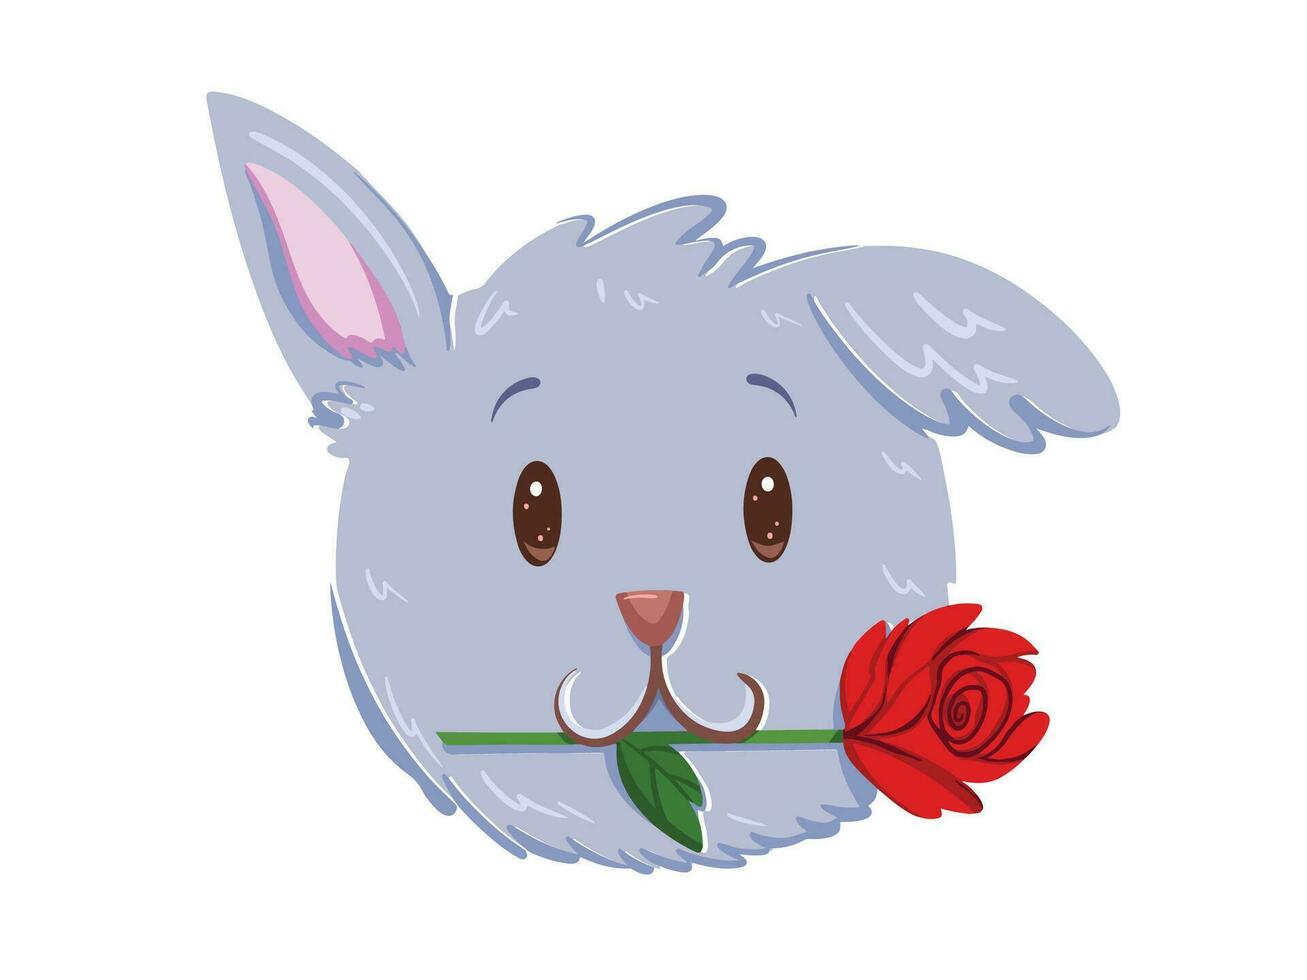 linda kawaii gris perrito perro cara retrato mordiendo en uno Rosa flor vector ilustración aislado en blanco horizontal antecedentes. sencillo plano dibujos animados Arte estilizado san valentin día temática dibujo.